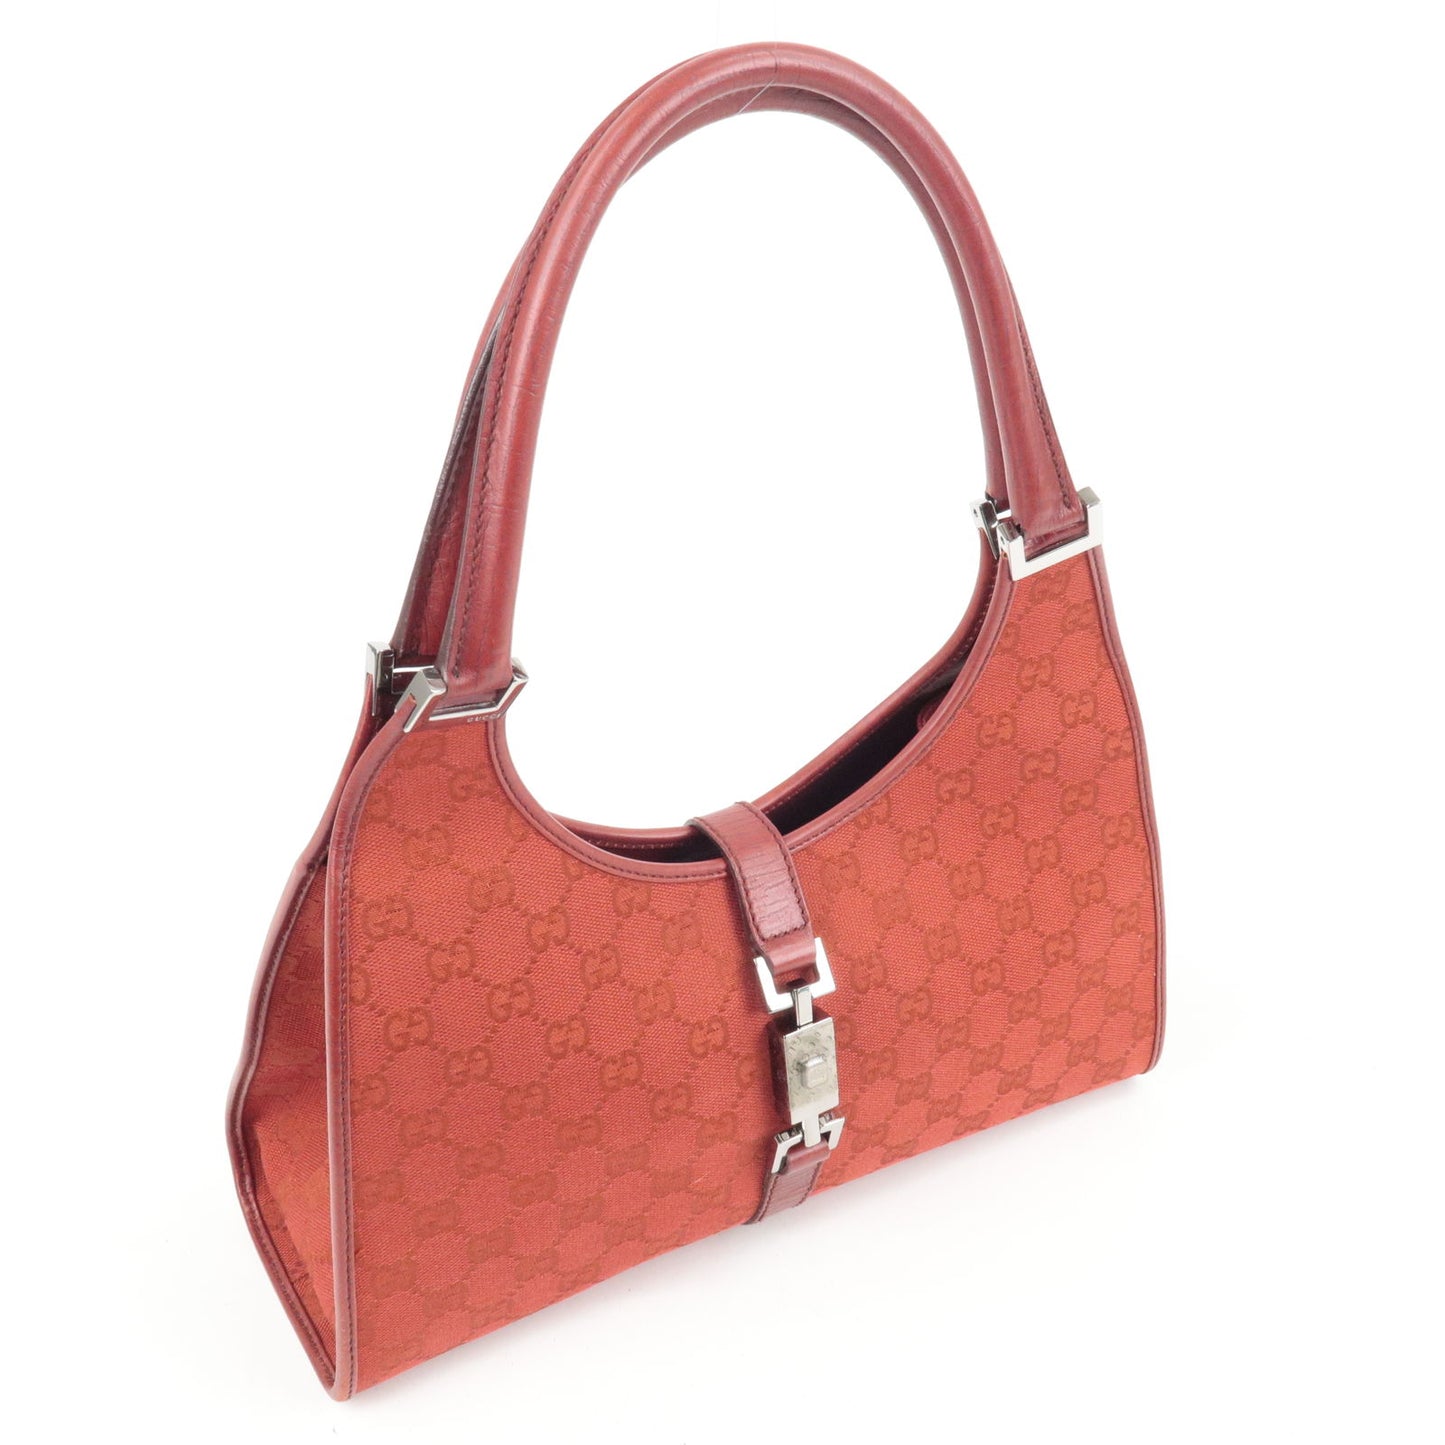 GUCCI Jacki GG Canvas Leather Shoulder Bag Hand Bag Red 01719